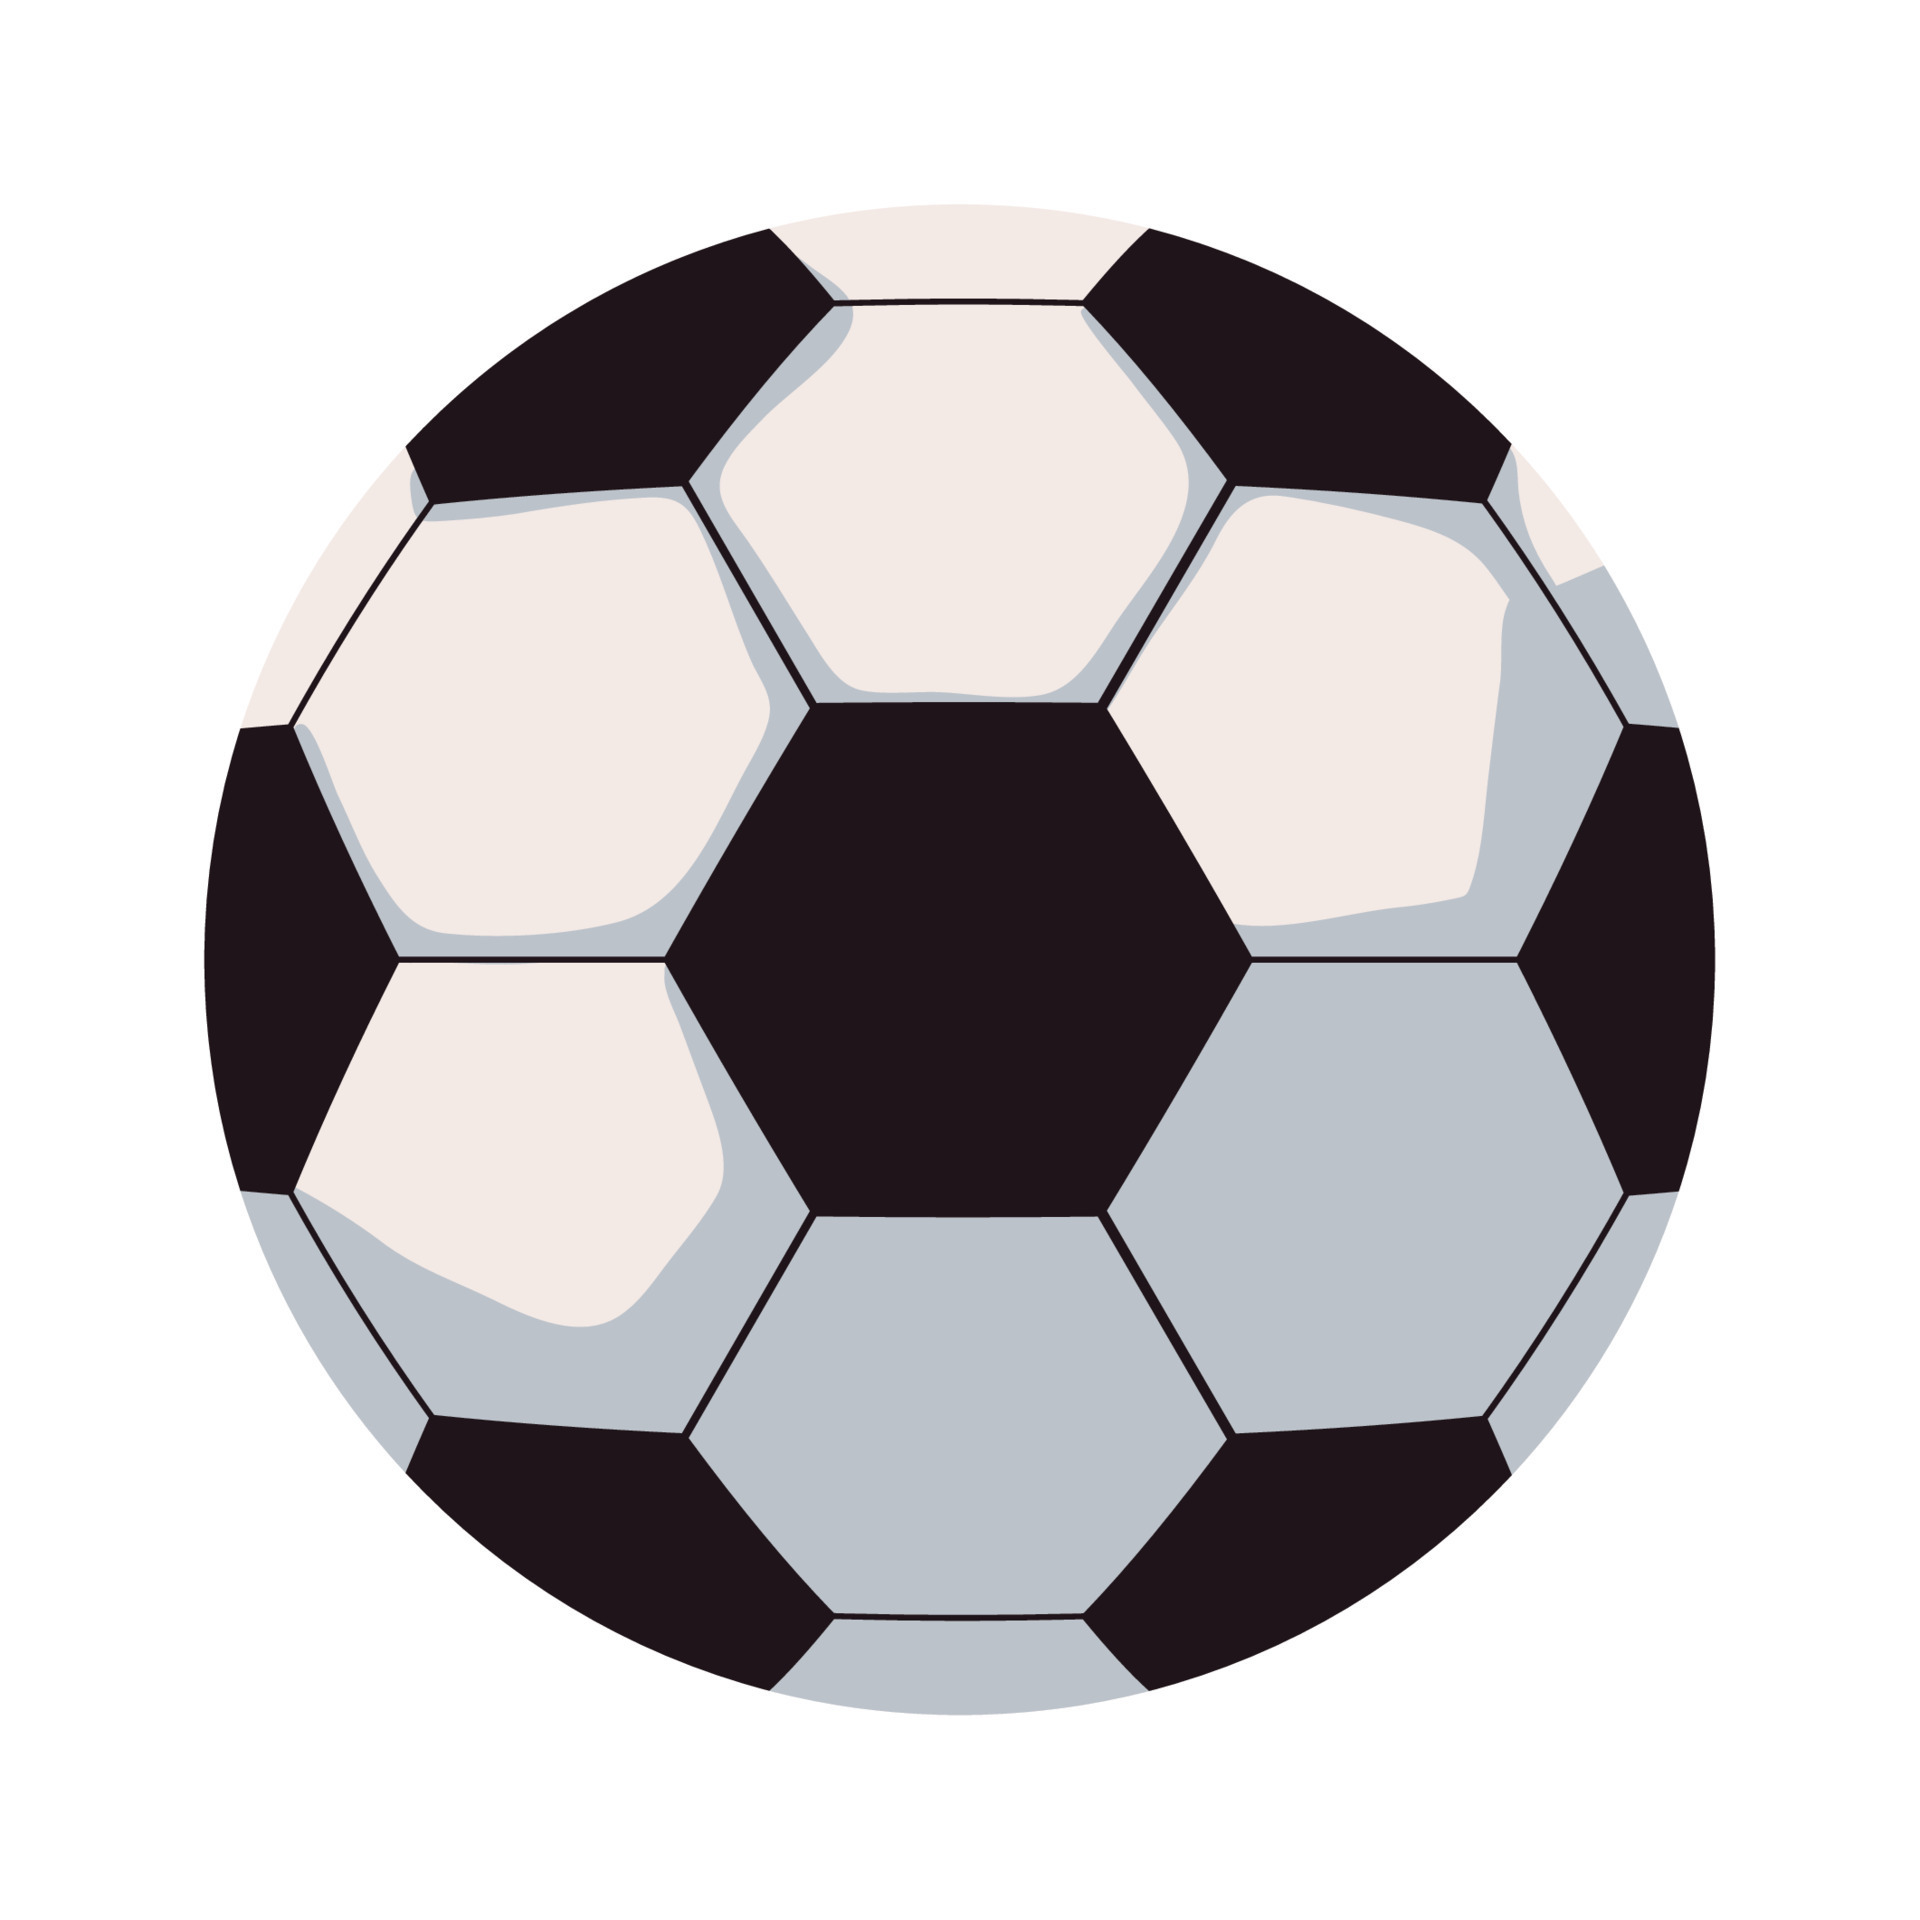 Uma Bola De Futebol De Competição De Esporte E Tema De Jogo Design Isolado  Ilustração Vetorial Ilustraciones svg, vectoriales, clip art vectorizado  libre de derechos. Image 91505156